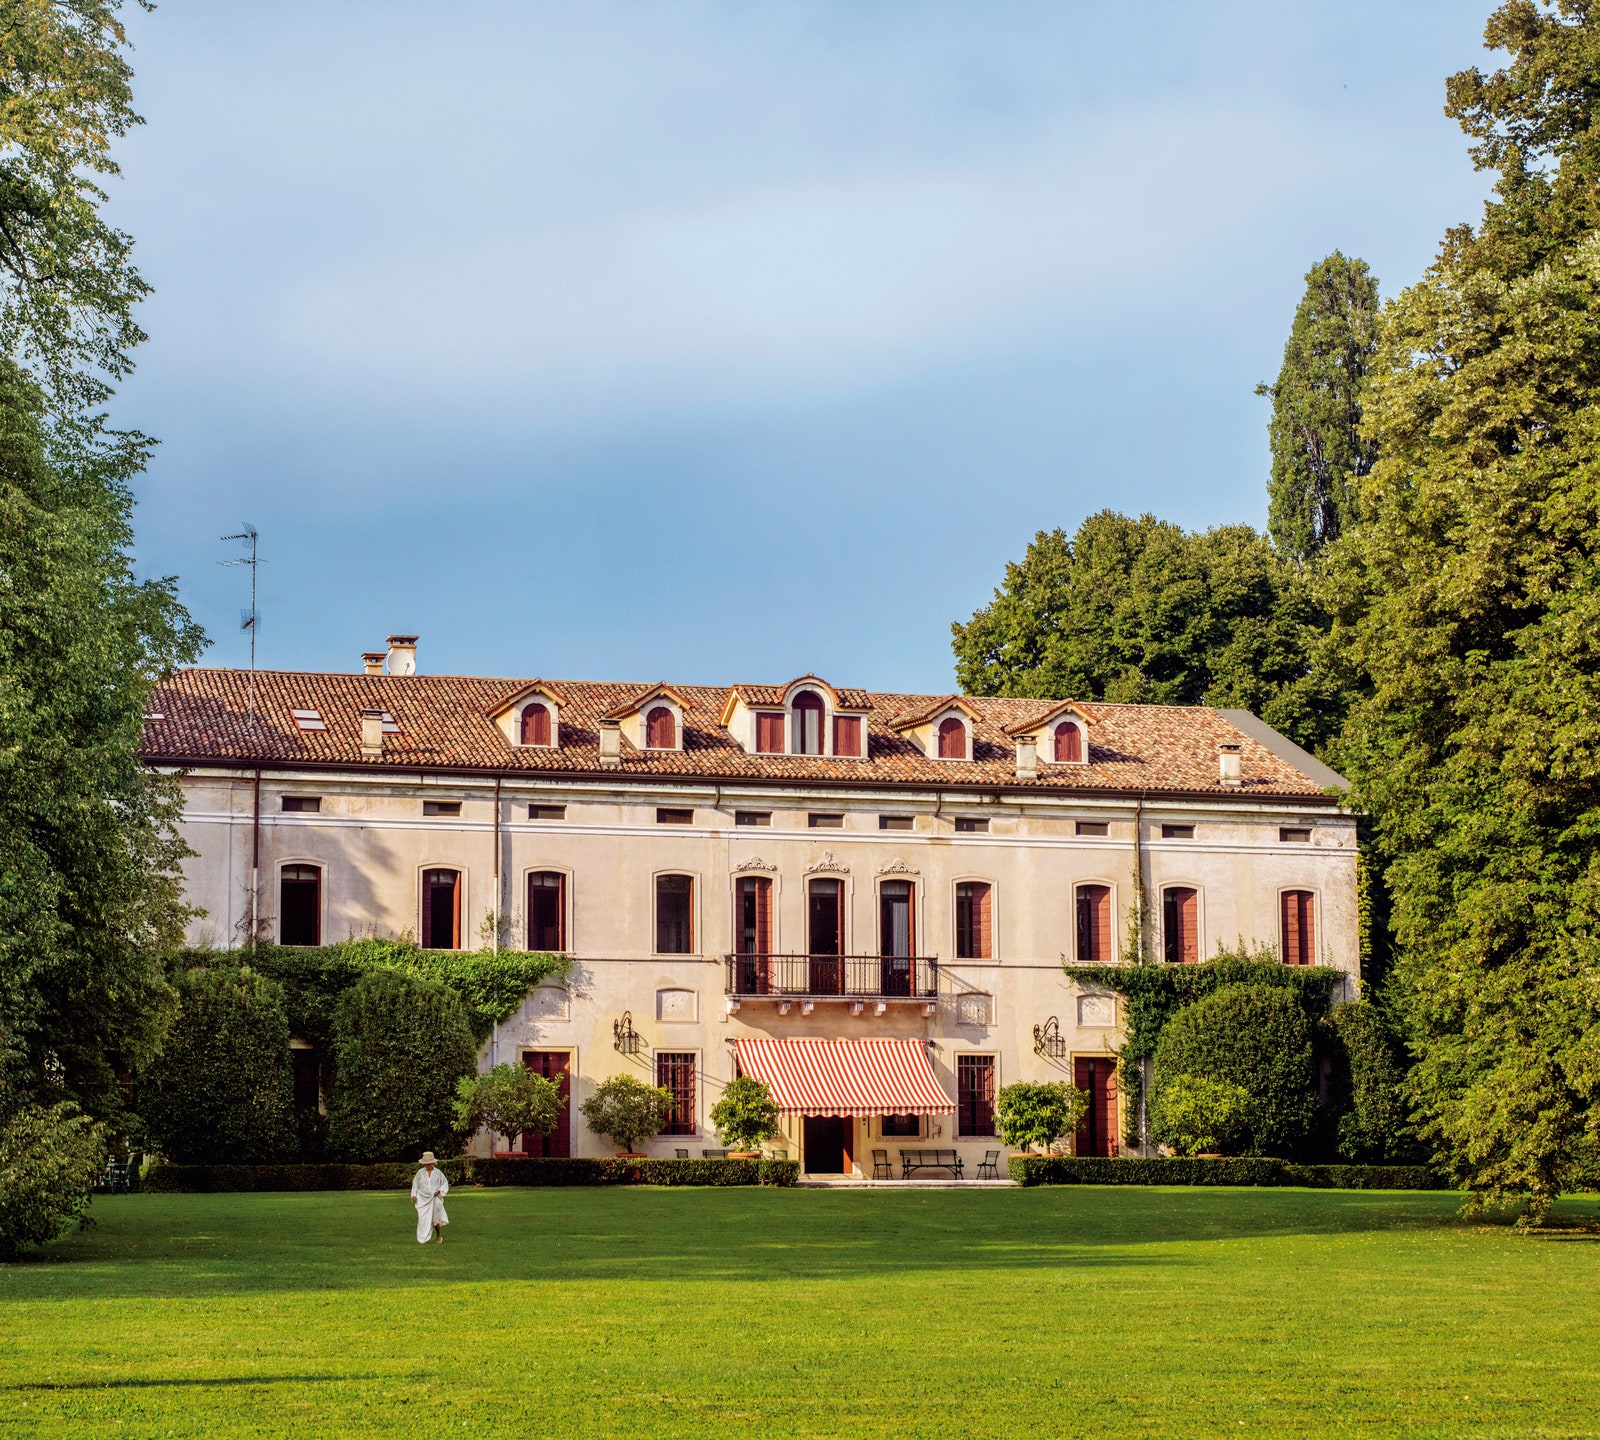 Графиня Кристиана Брандолини дАдда в своем поместье Висторта в регионе Венето.